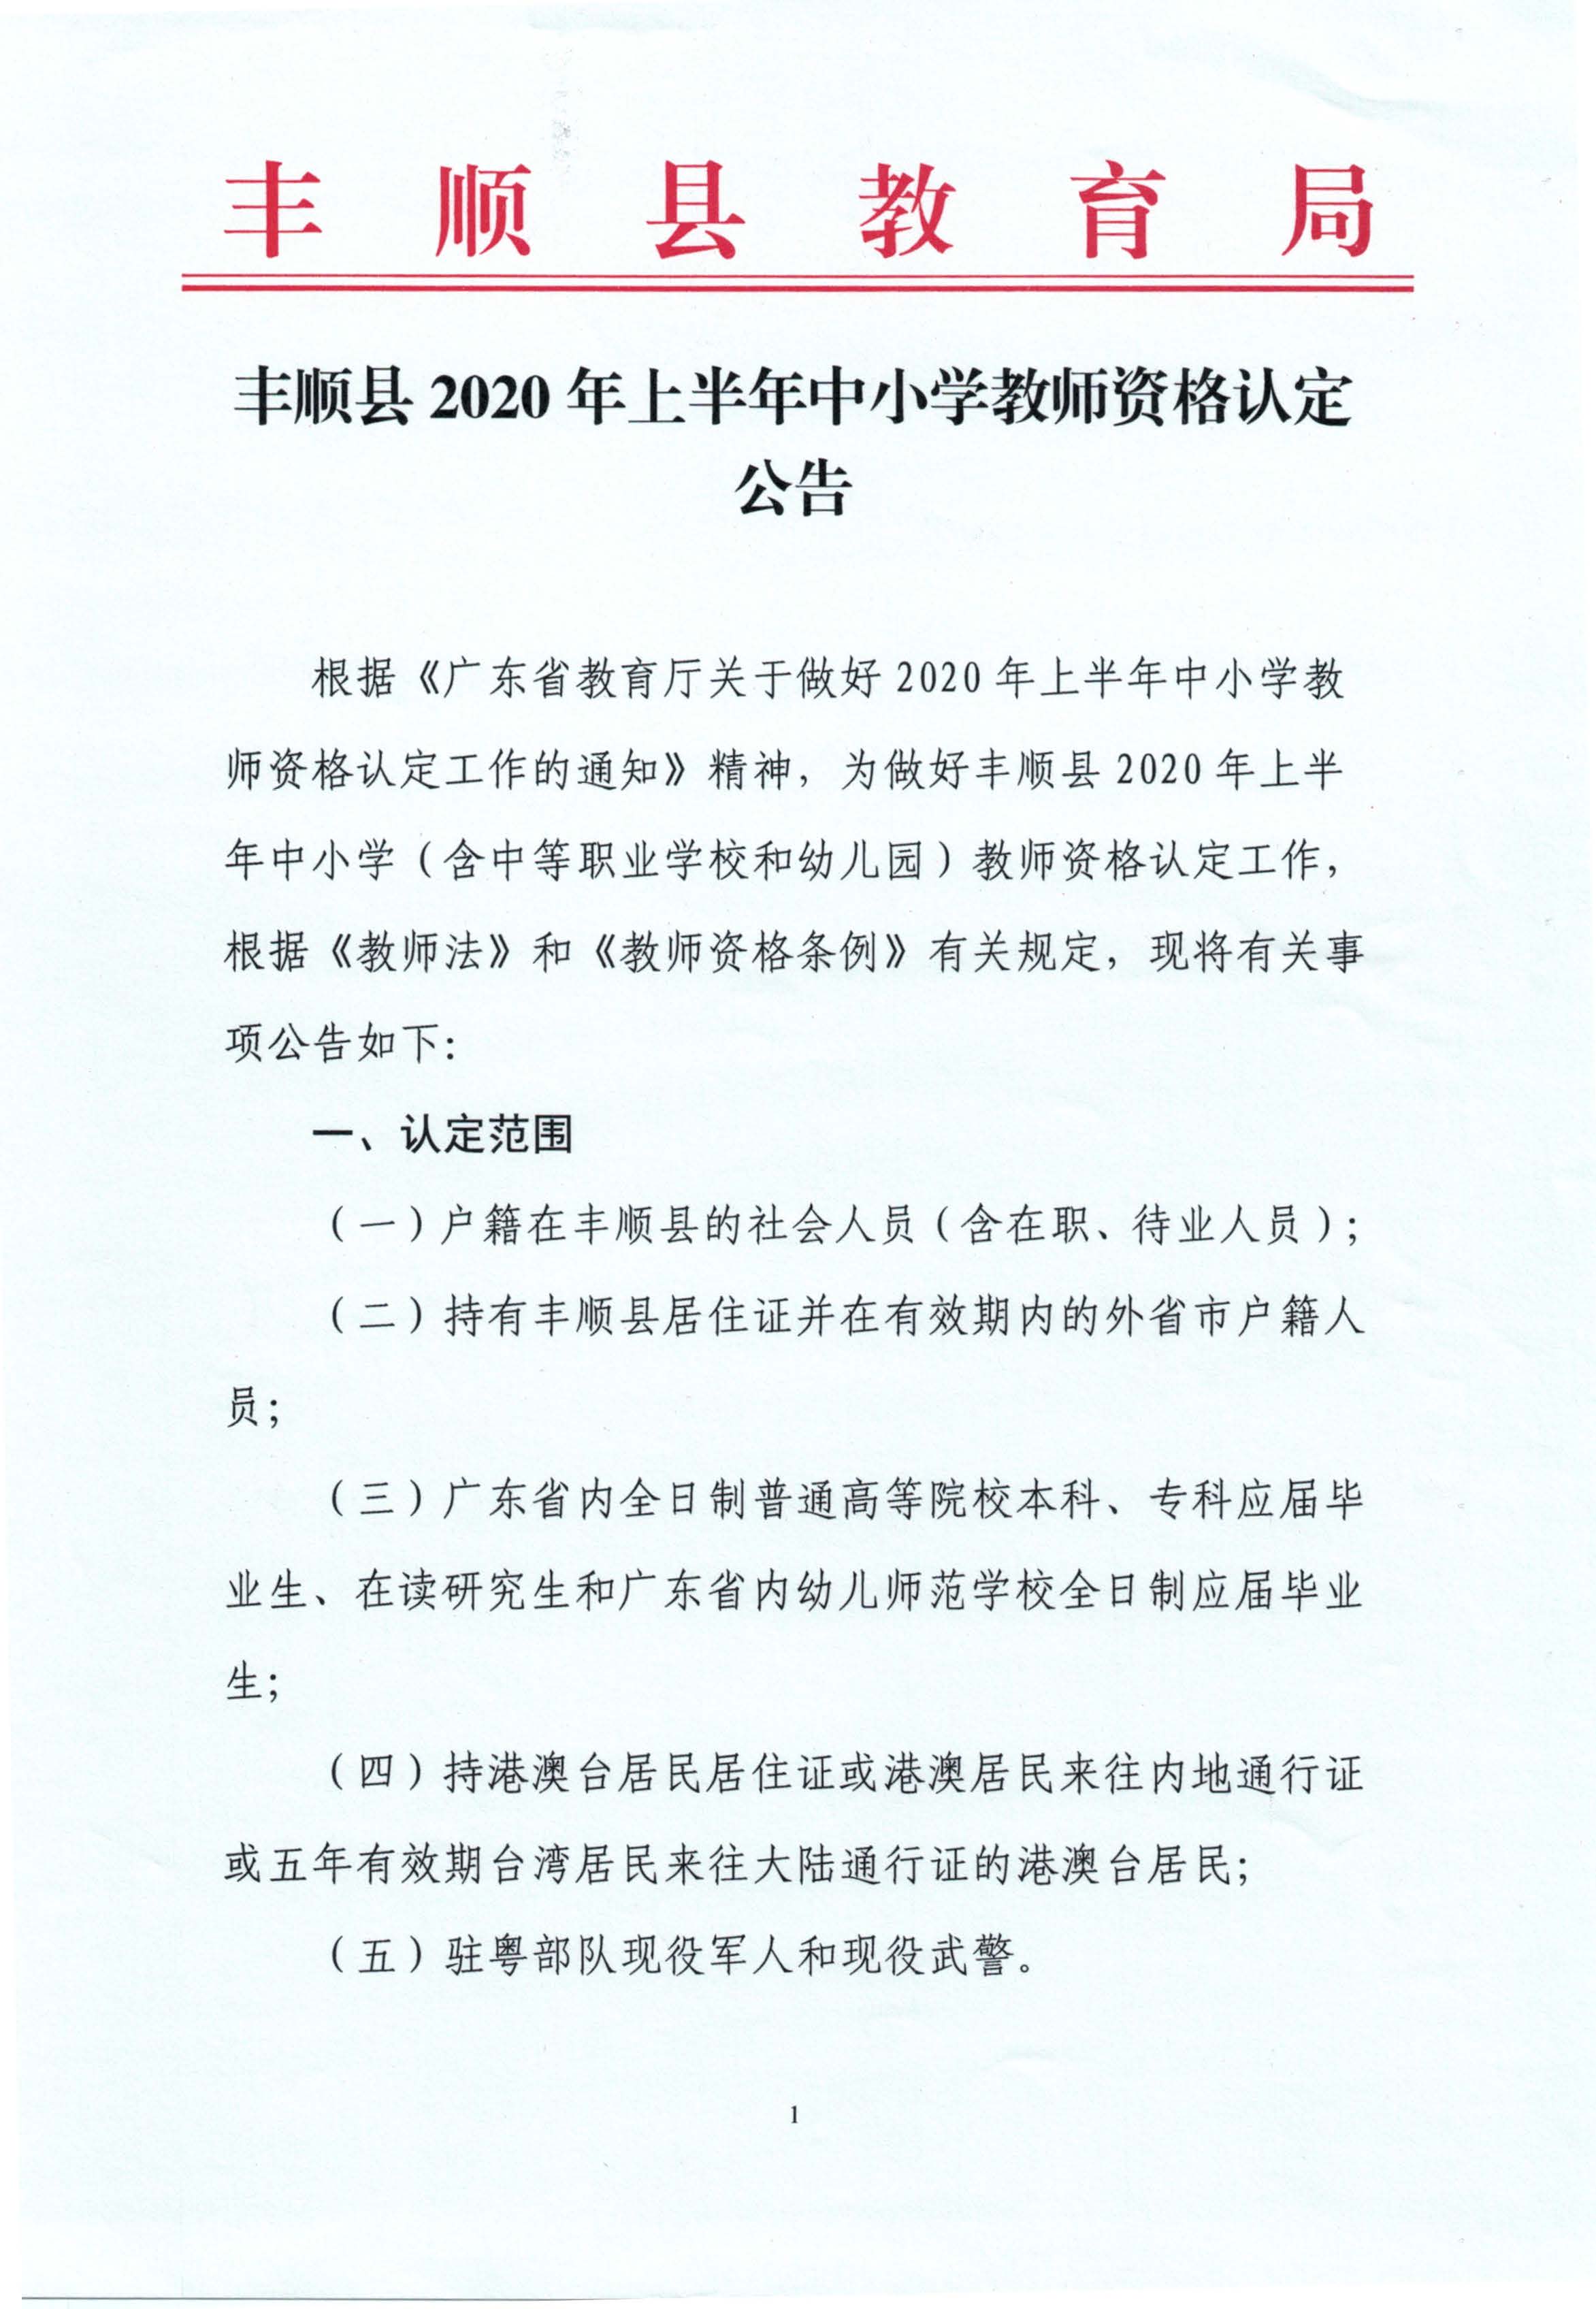 丰顺县2020年上半年中小学教师资格认定公告_页面_01.jpg